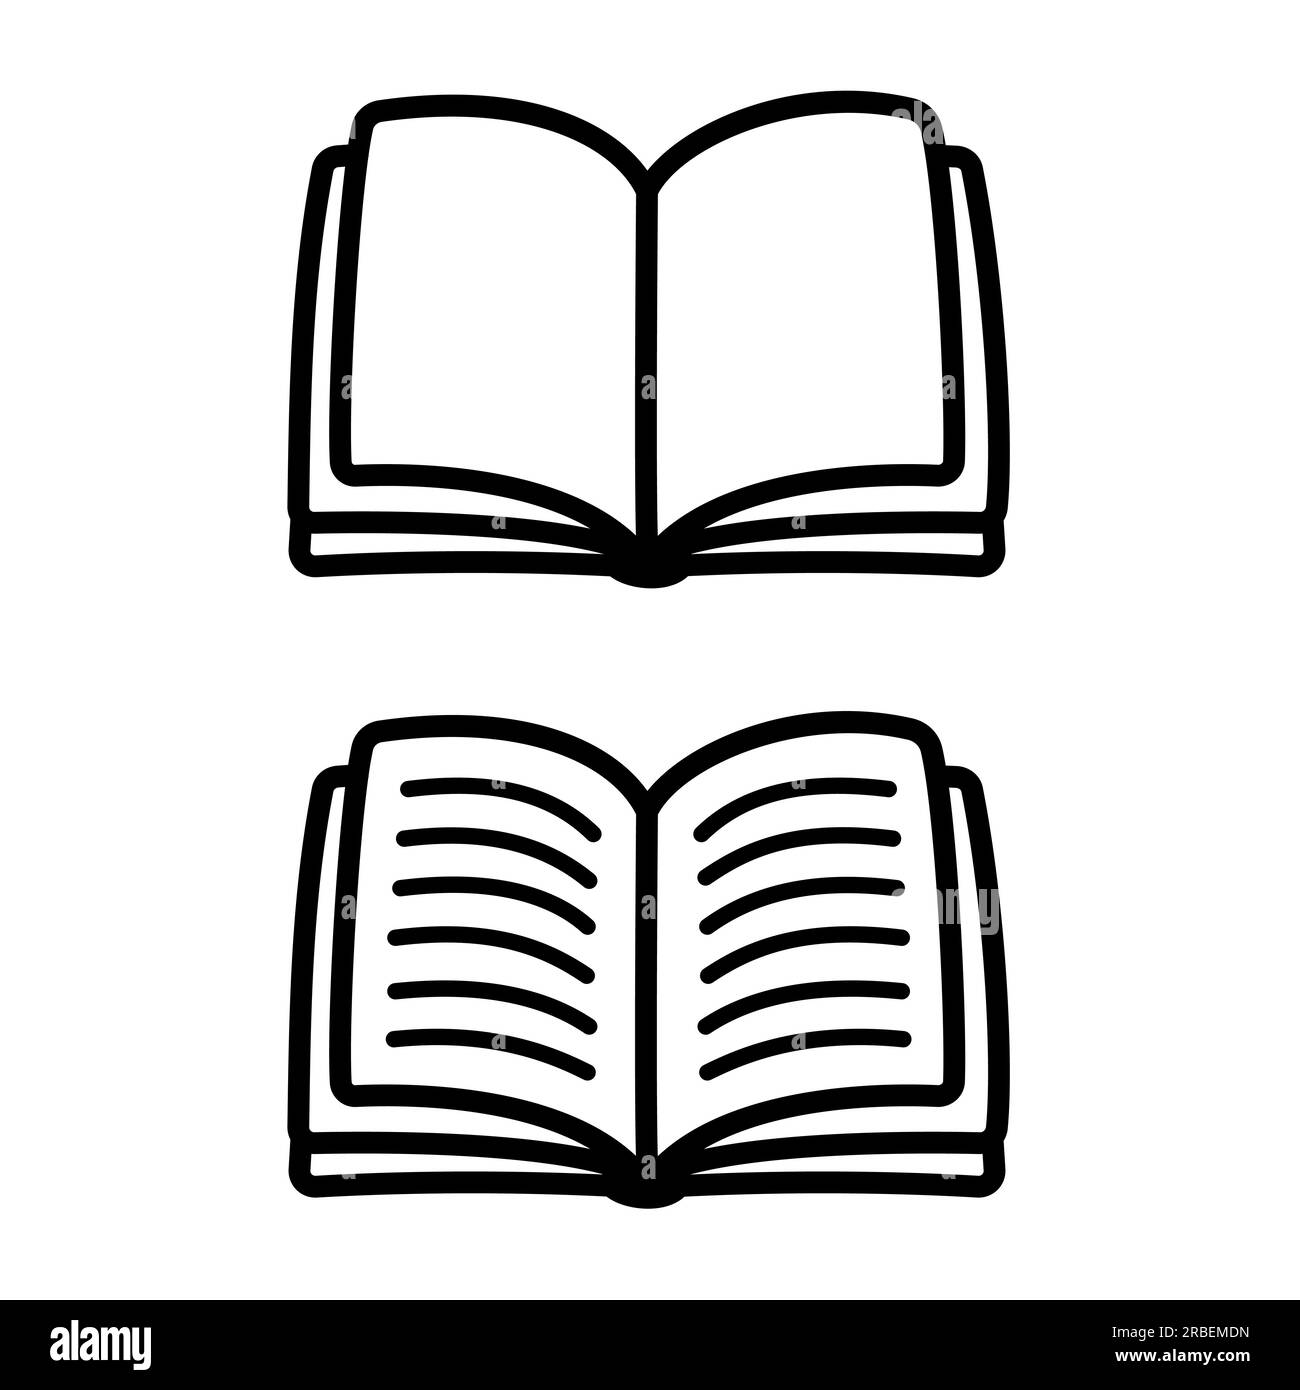 Das Symbol für das offene Buch ist leer und mit Text versehen. Einfache handgezeichnete Vektordarstellung, Strichzeichnungen. Stock Vektor